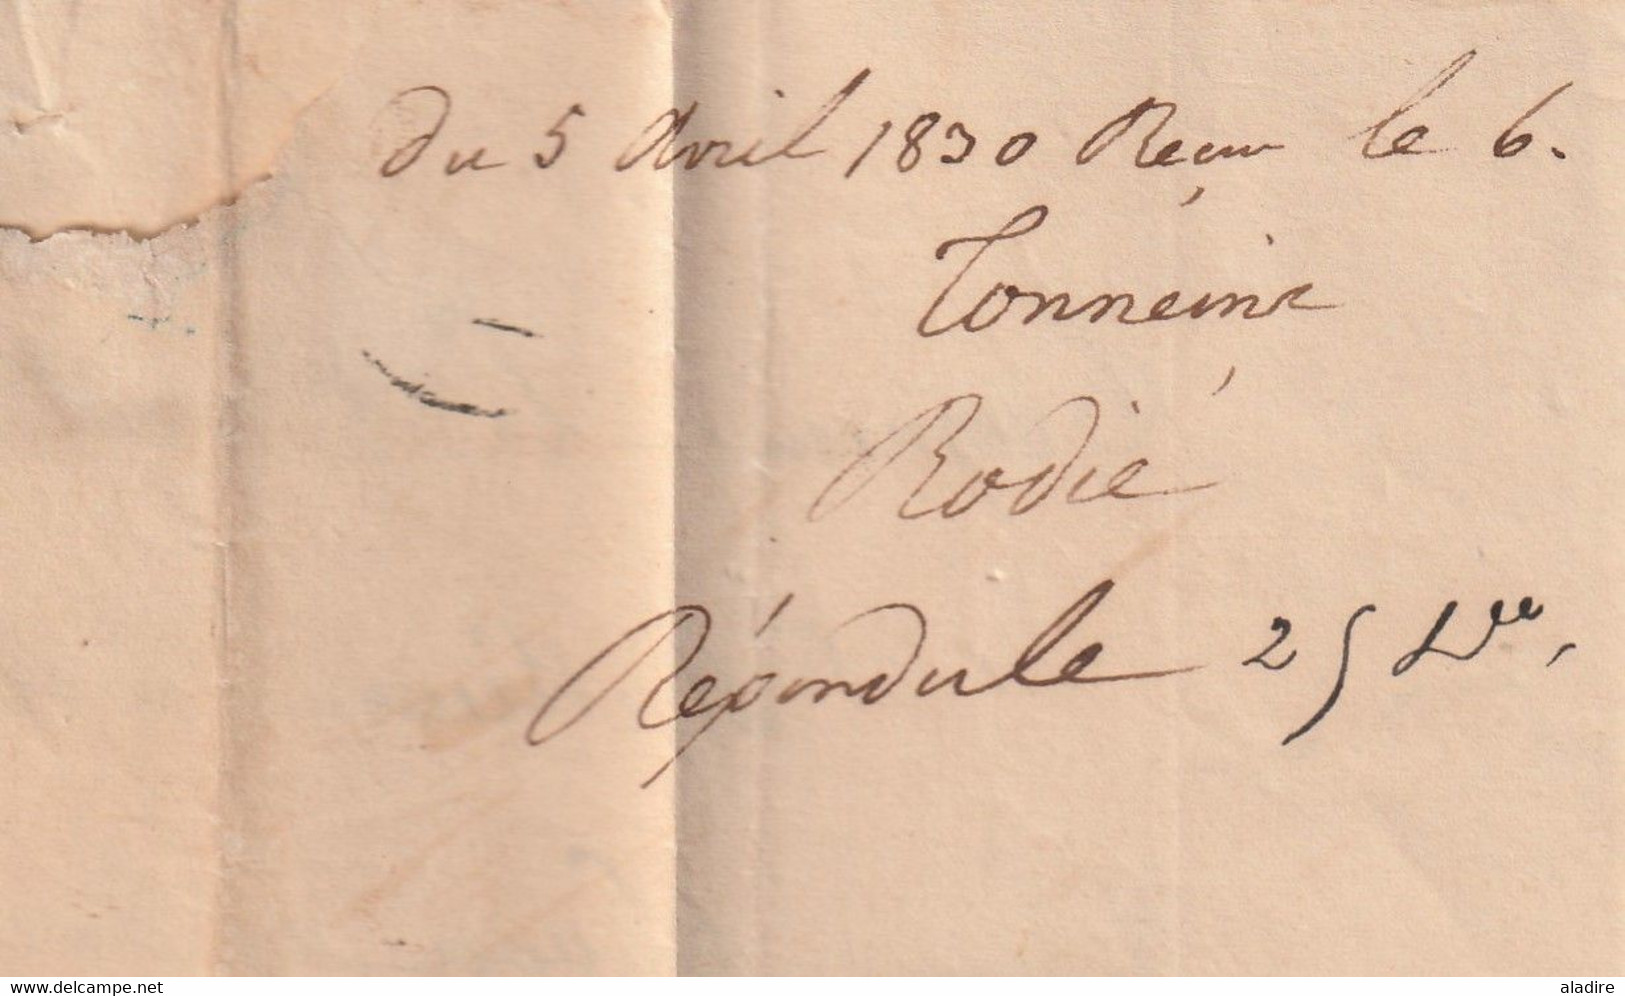 1830 - Marque postale 45 TONNEINS, Lot et Garonne et dateur sur Lettre pliée vers Bordeaux - dateur en arrivée